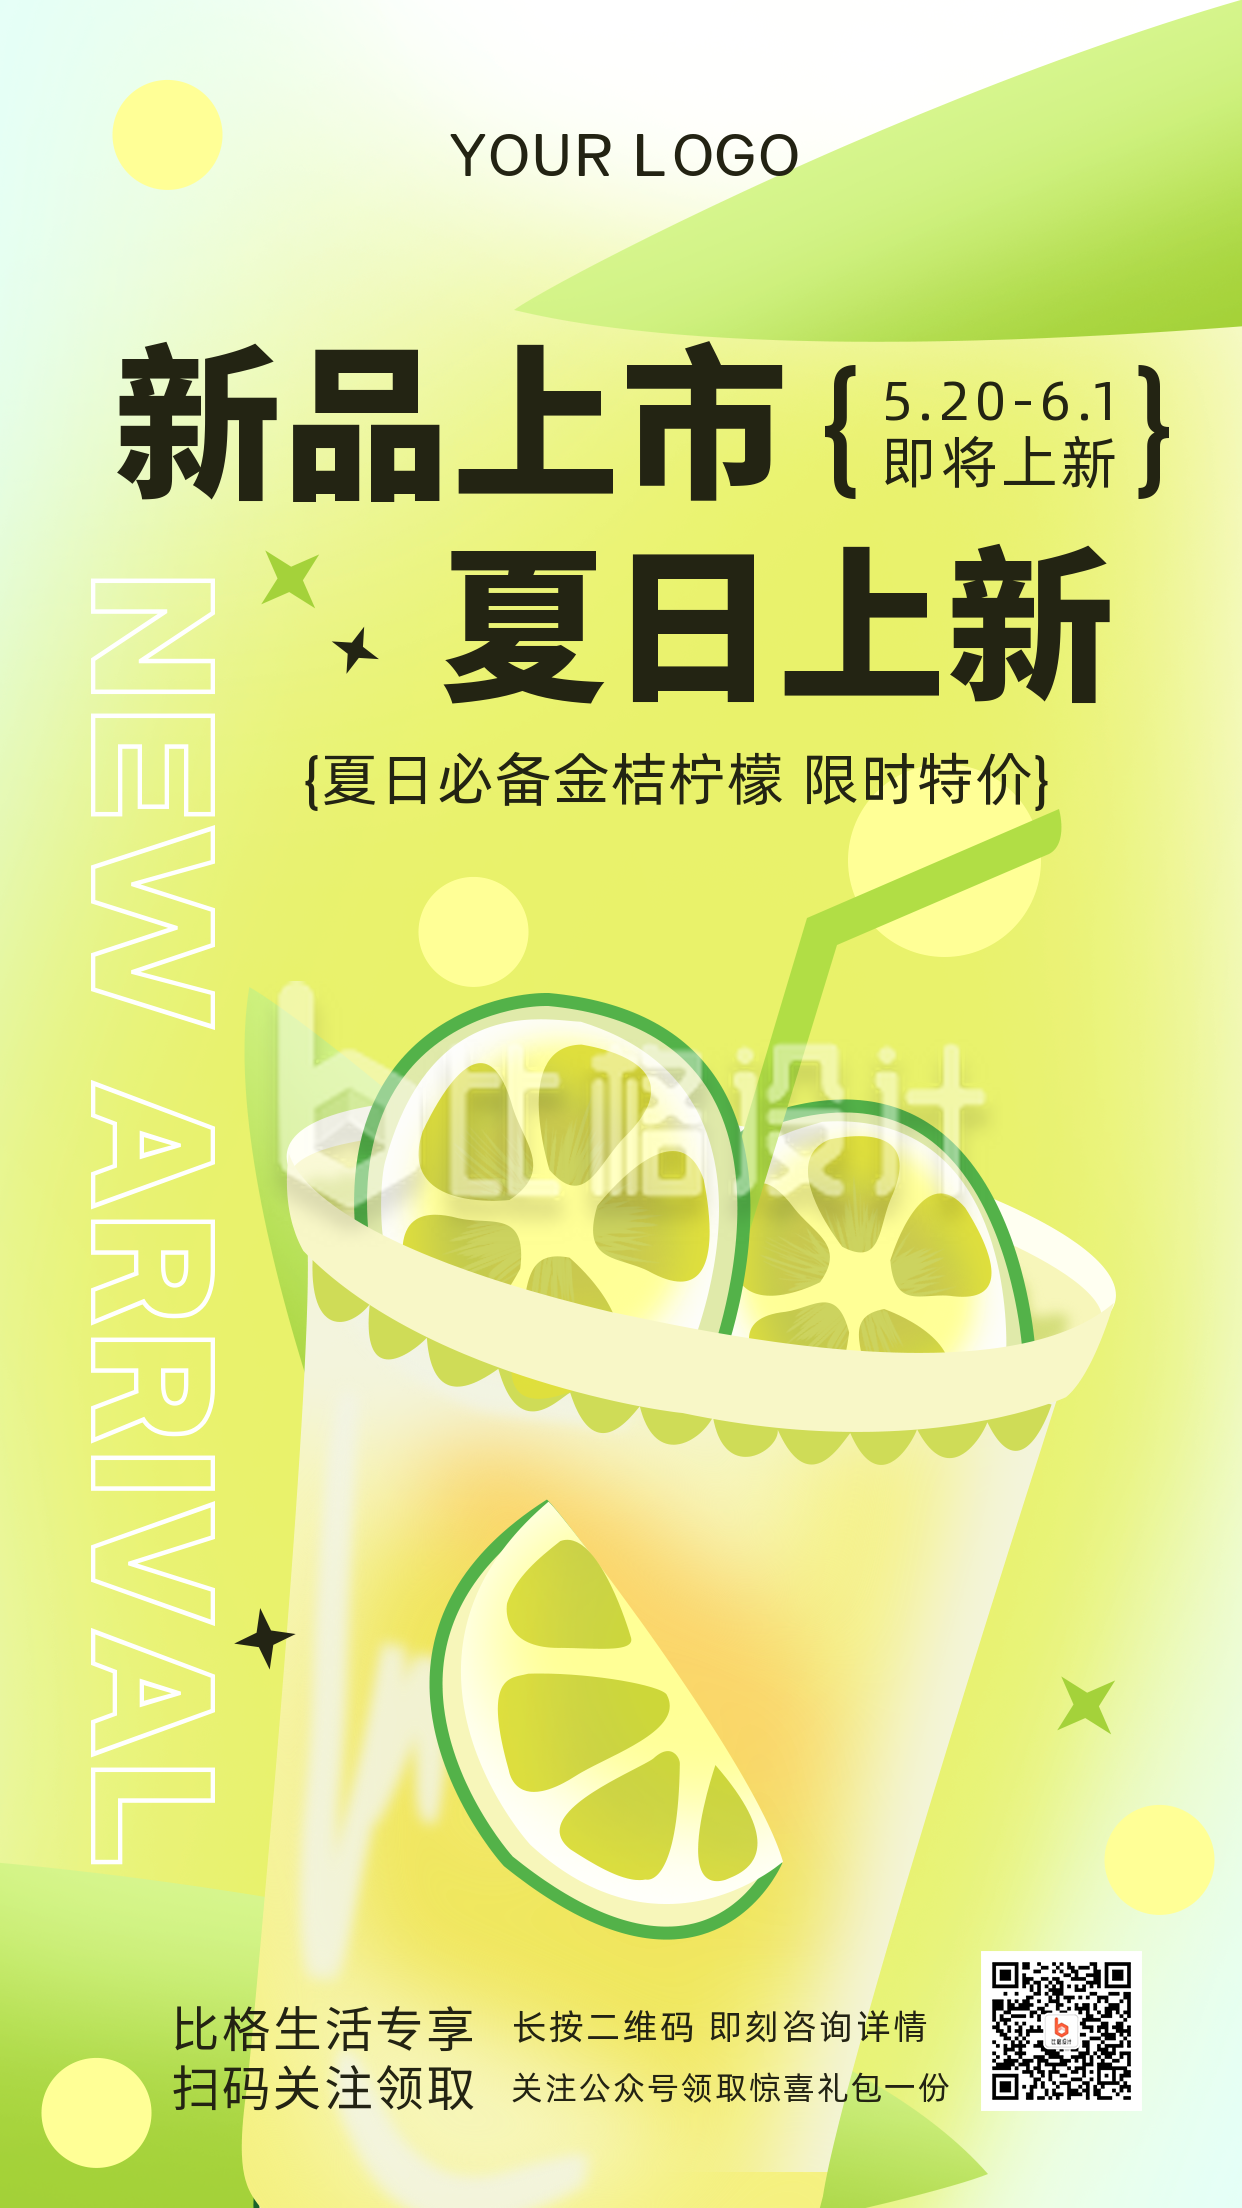 奶茶新品上市促销优惠福利活动手机海报